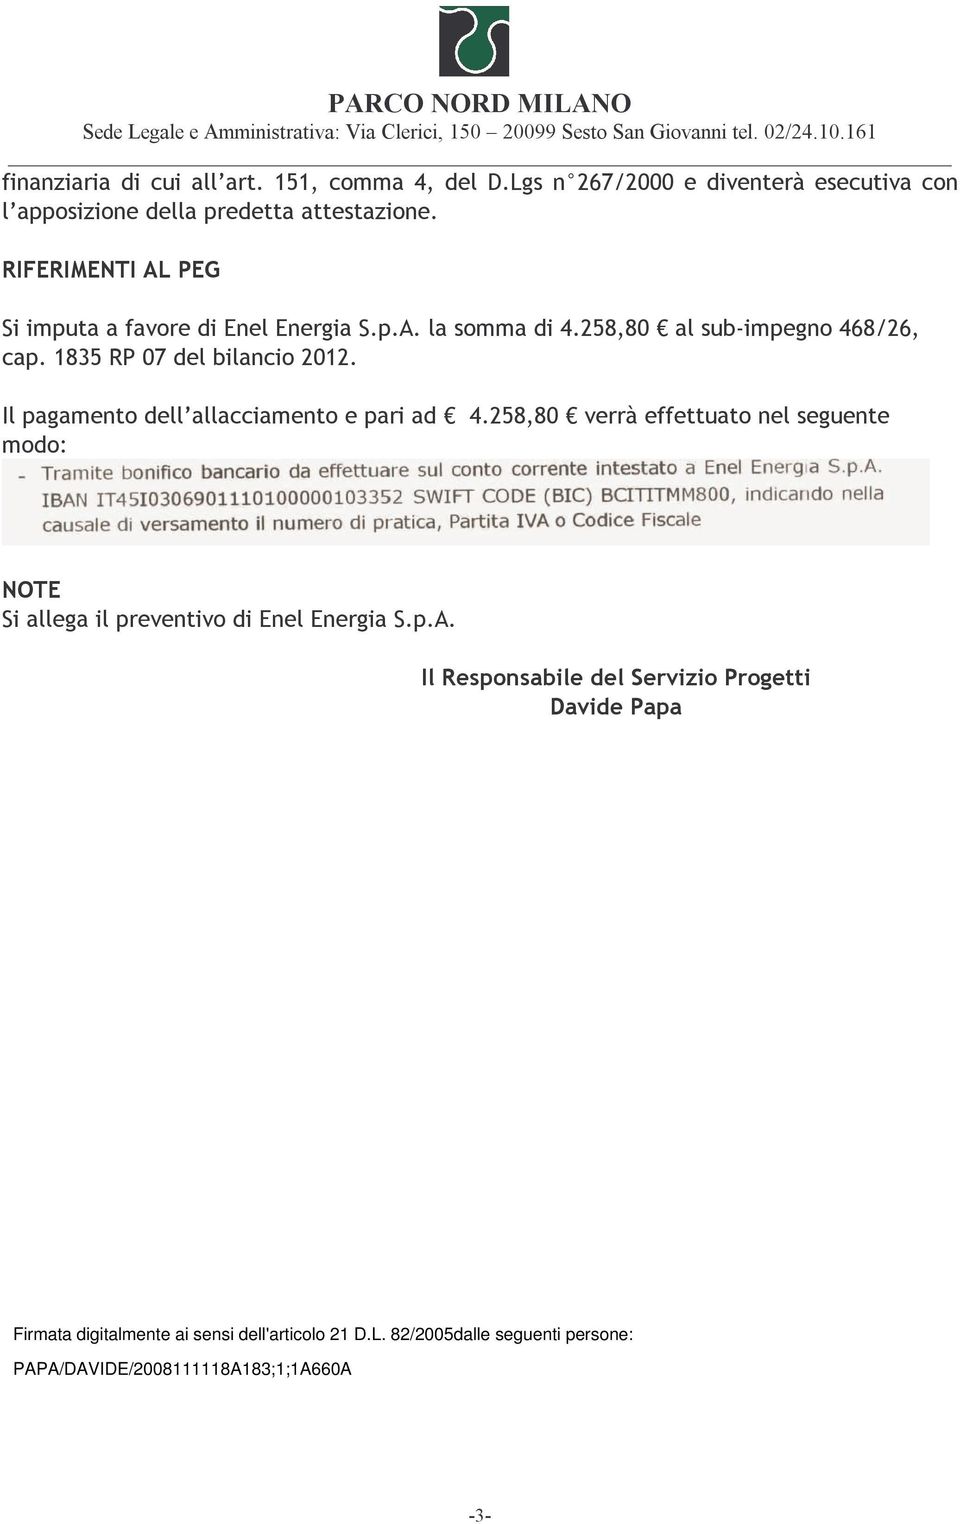 Il pagamento dell allacciamento e pari ad 4.258,80 verrà effettuato nel seguente modo: NOTE Si allega il preventivo di Enel Energia S.p.A.